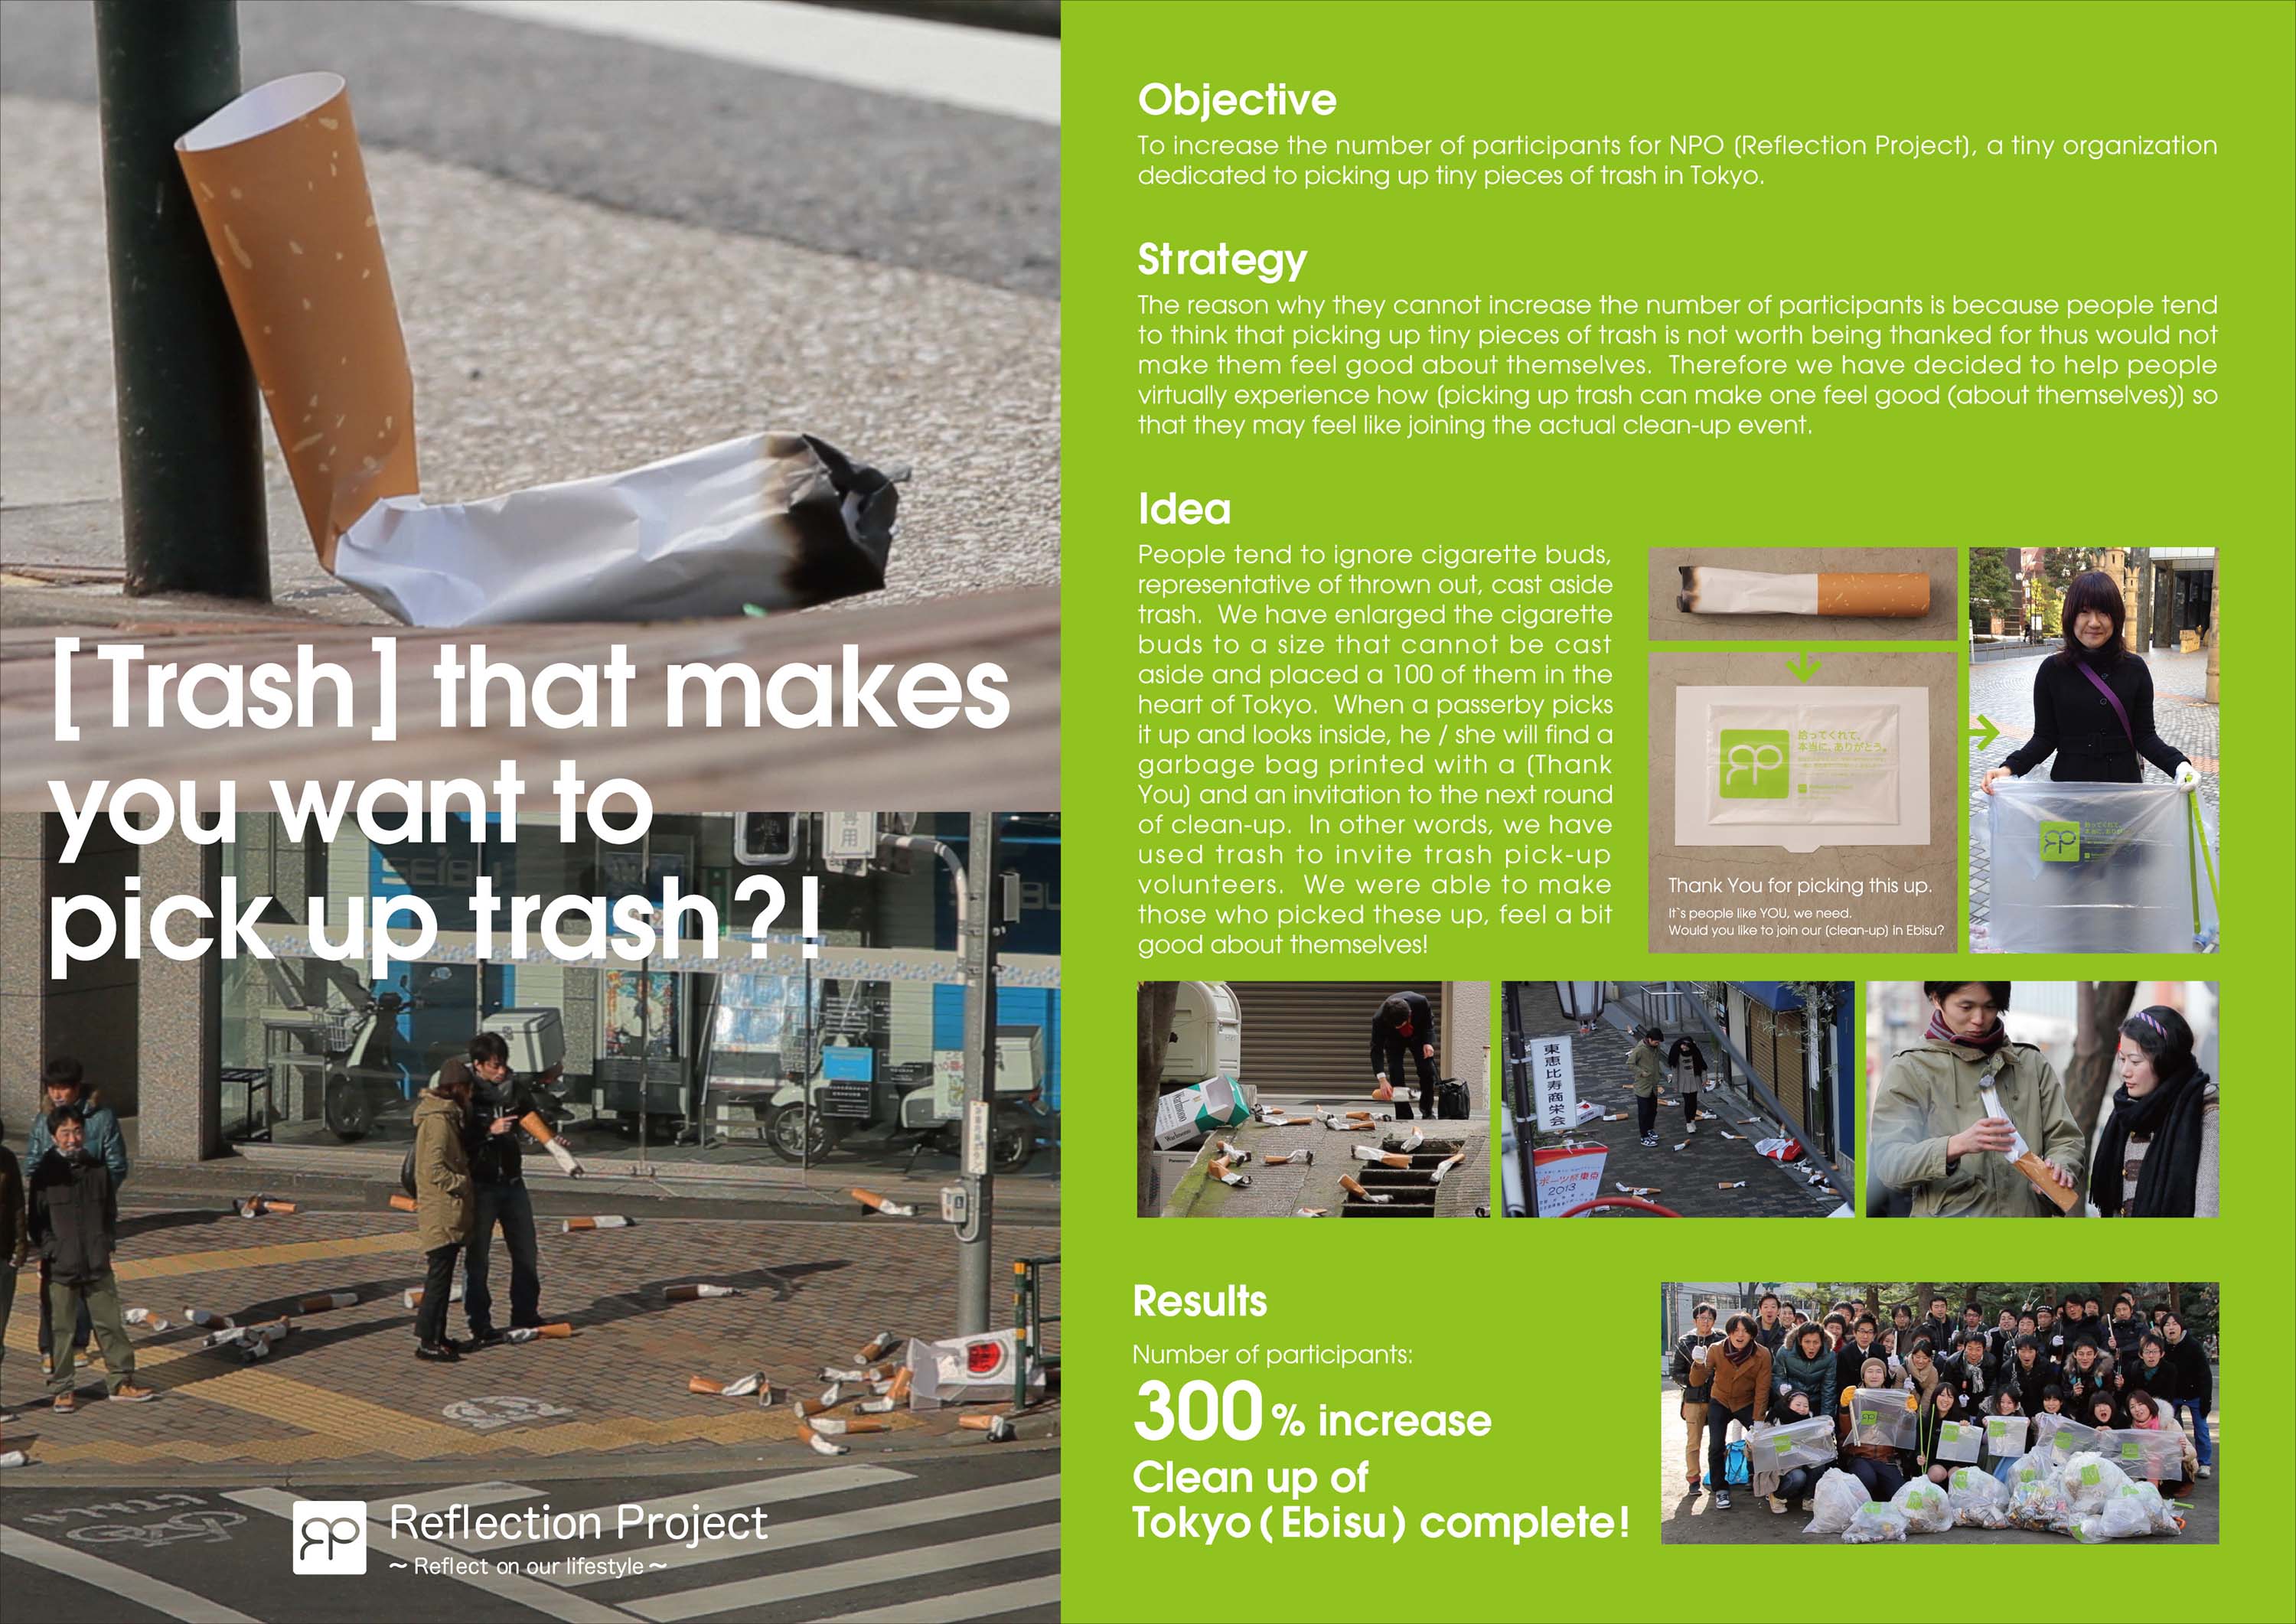 Рекламное агентство Grey, Токио провело необычную ambient кампанию для небольшой организации NPO Reflection Project, которая собирает мелкий мусор на улицах Токио